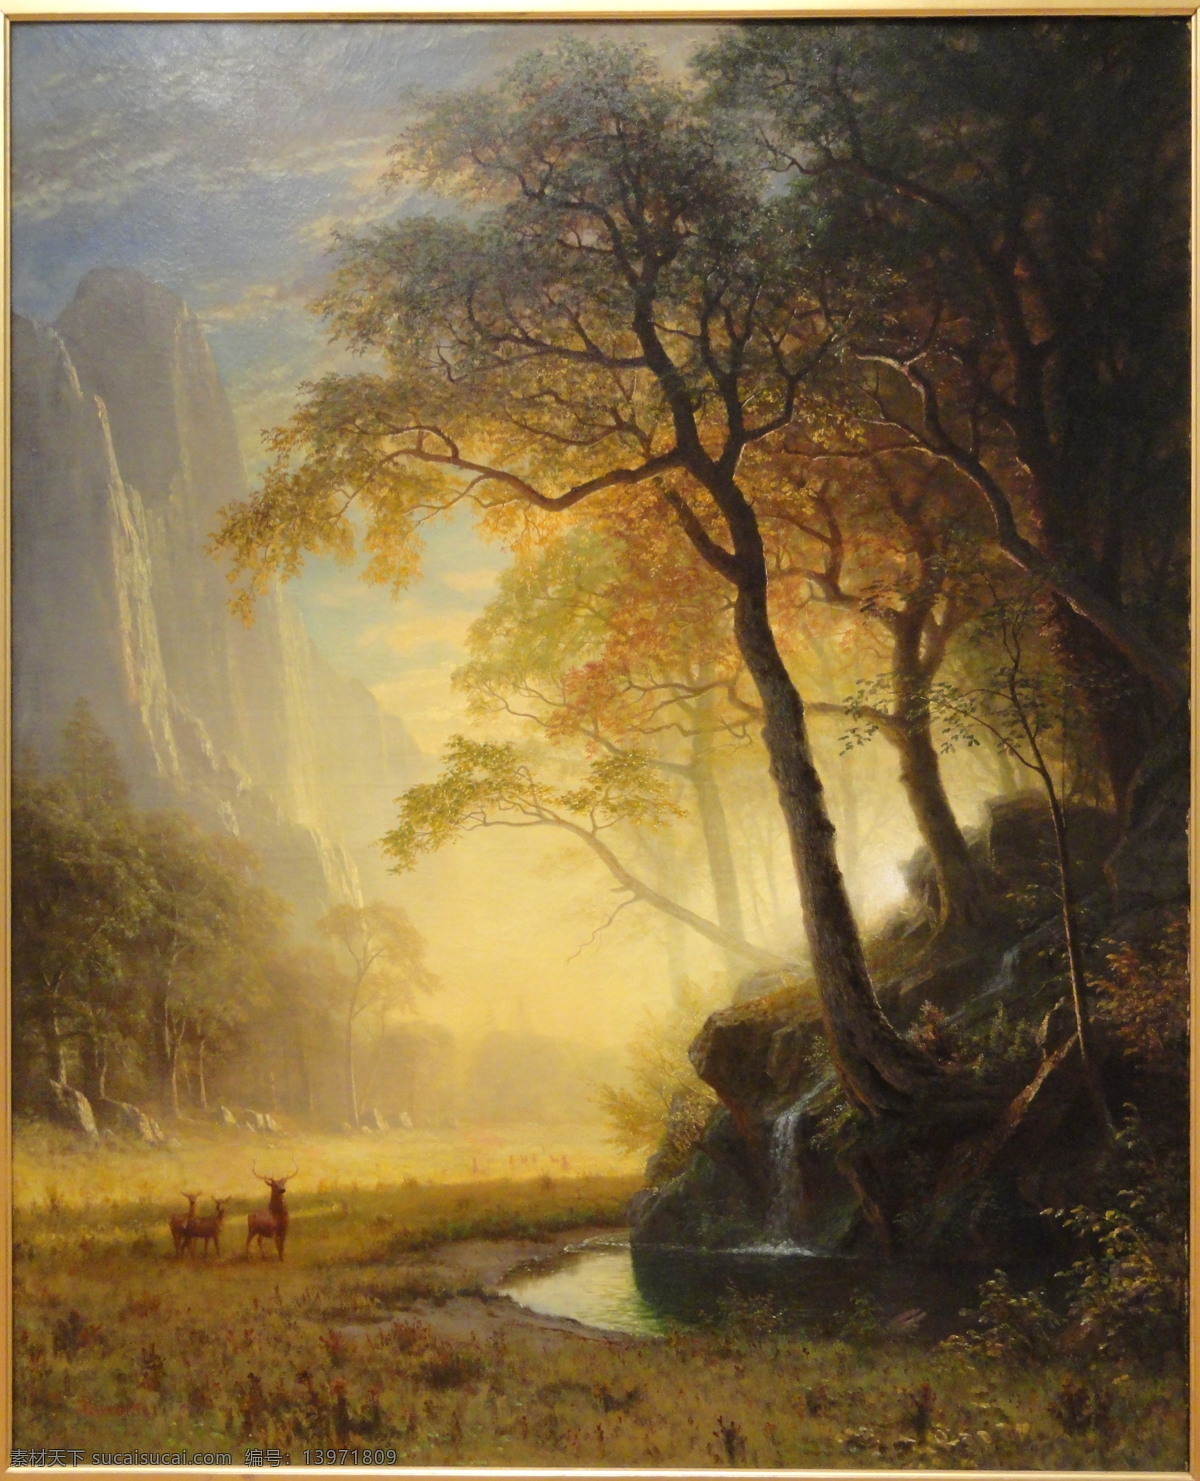 比尔 史 伯特 景观 艺术 河 鹿 日出 森林 自然 作品 阿尔贝特 美国画家 哈德逊河学院 景观艺术 私人收藏 装饰素材 油画